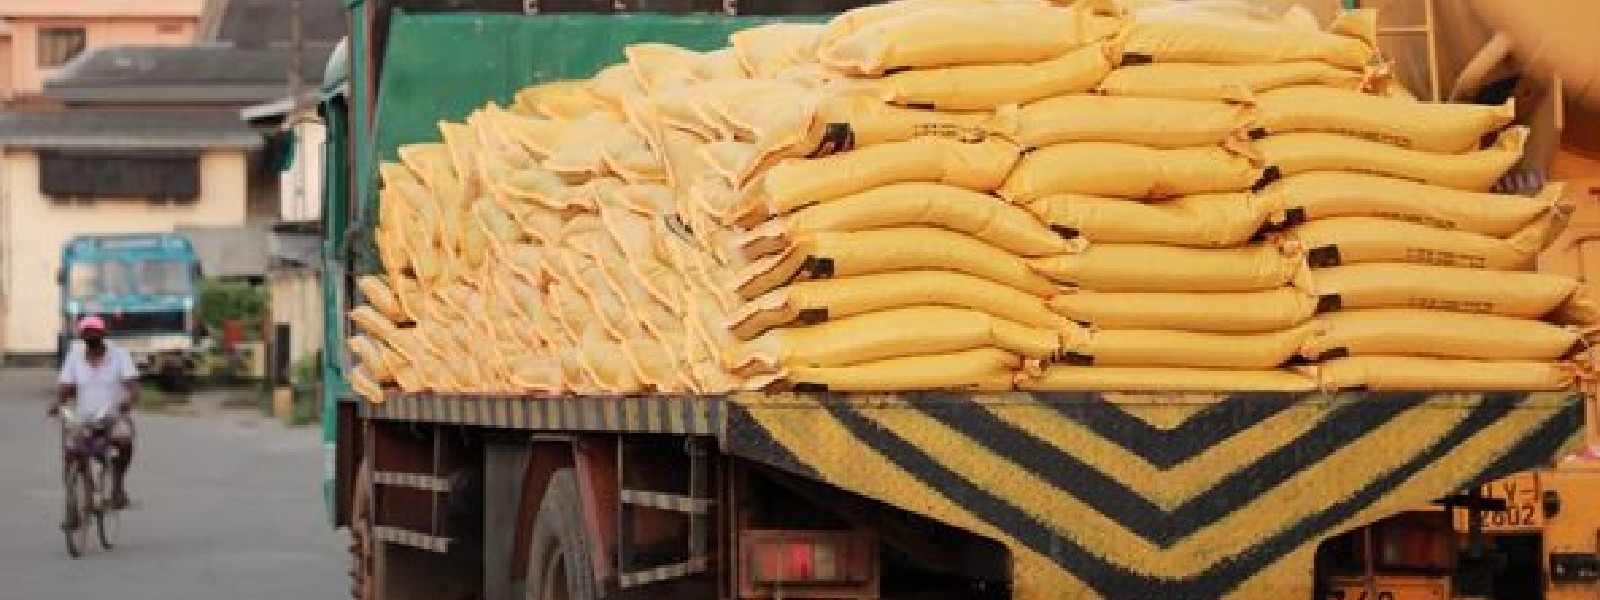 Distribution of imported fertilizer begins